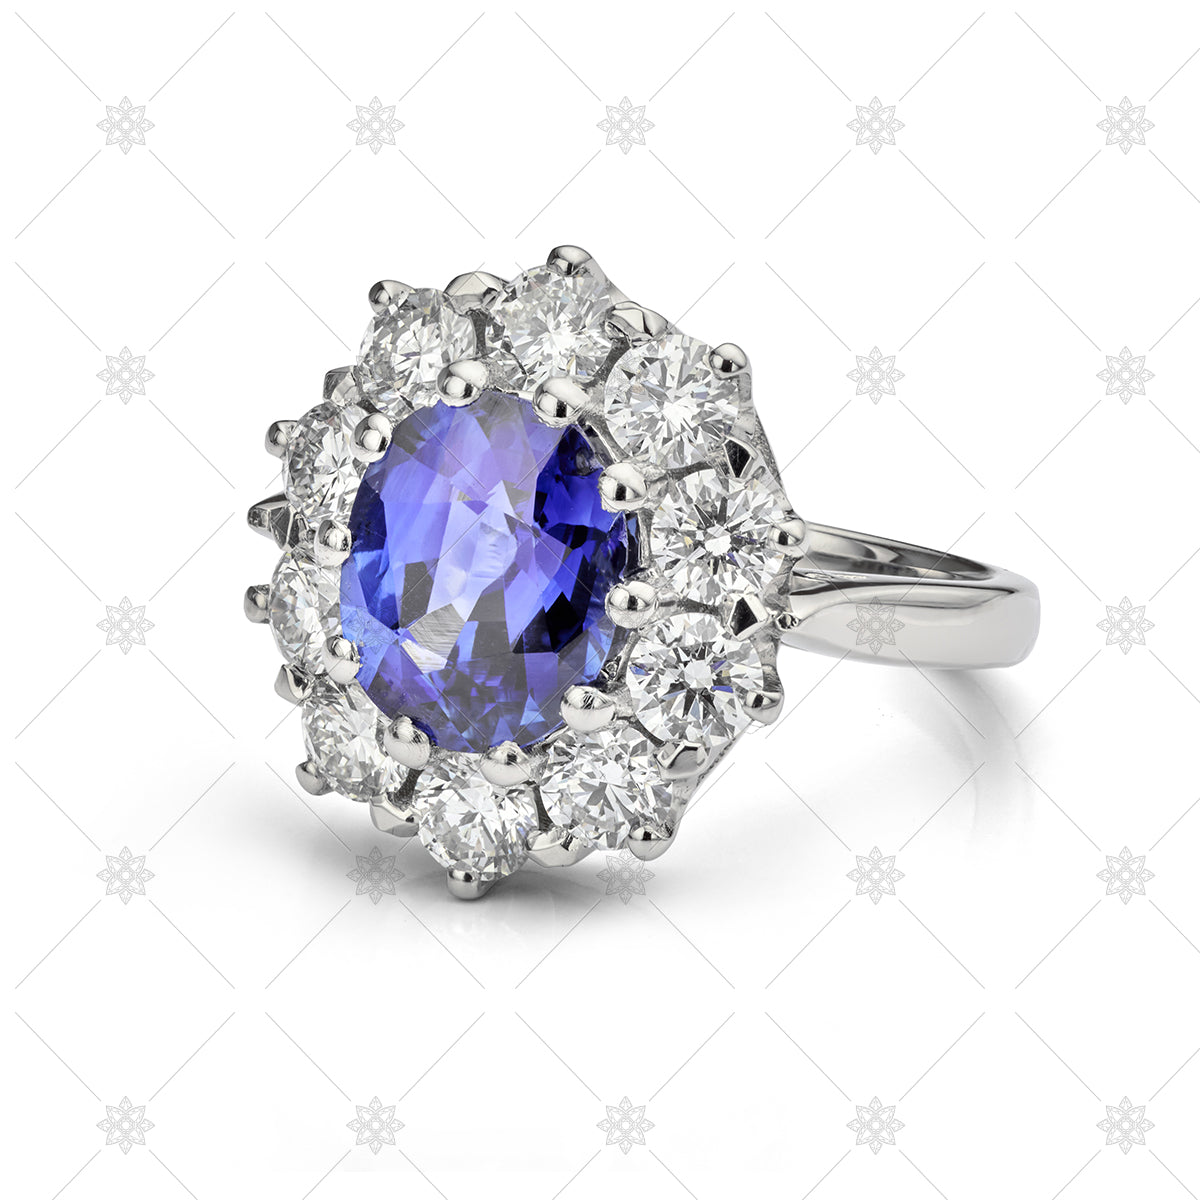 Large marquise diamond engagement ring & wedding band | Engagement ring  wedding band, Wedding rings engagement, Engagement rings marquise